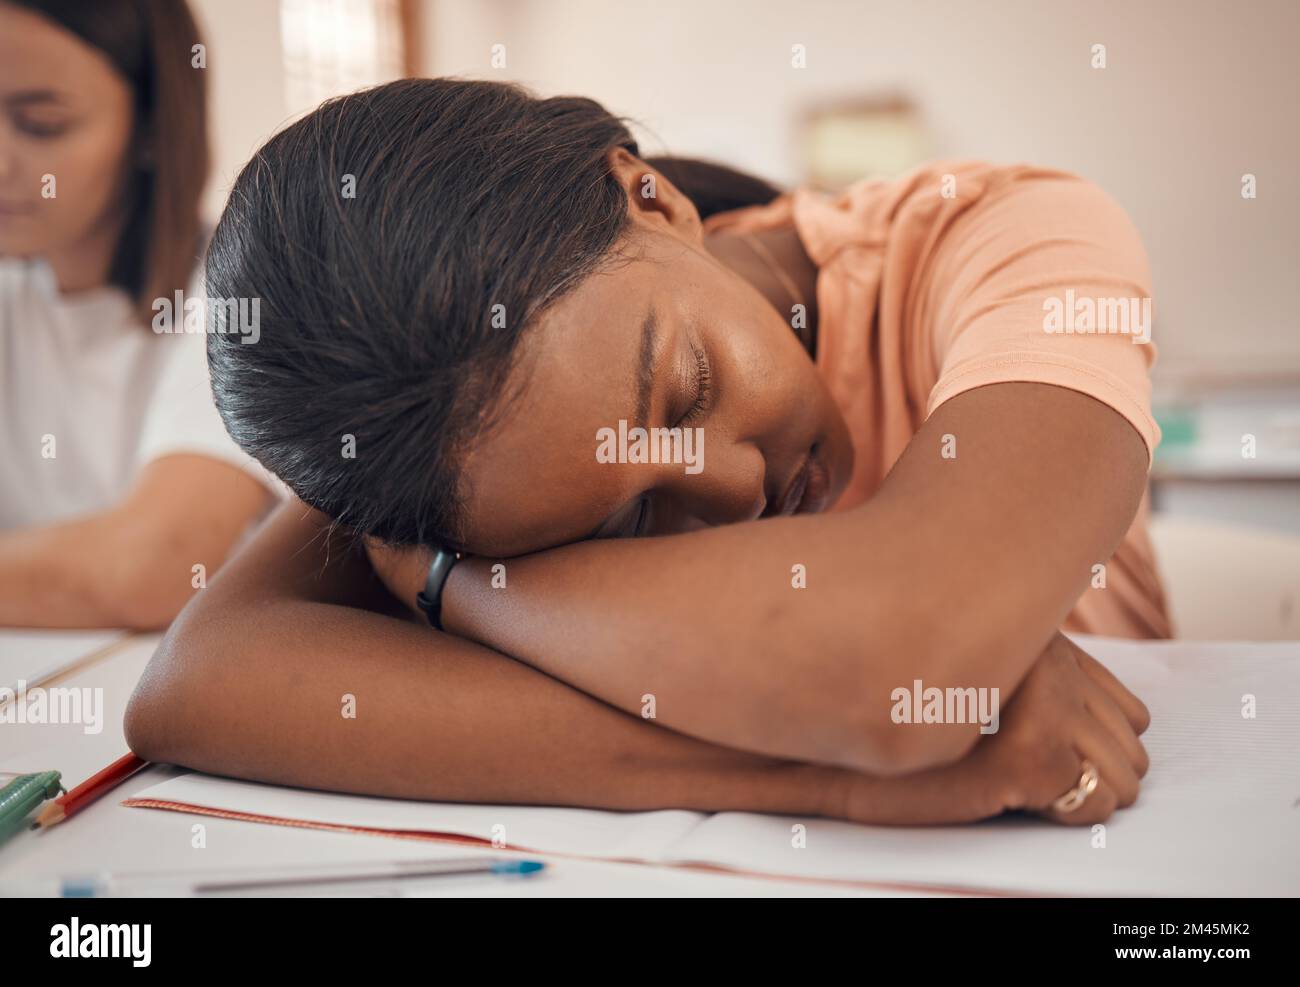 Mädchen, Teenager oder Klassenzimmer schlafen in Stress, Depression oder psychische Gesundheit Burnout in der indischen Bildung, Lern- oder Lernschule. Zoom, Ermüdung oder Stockfoto